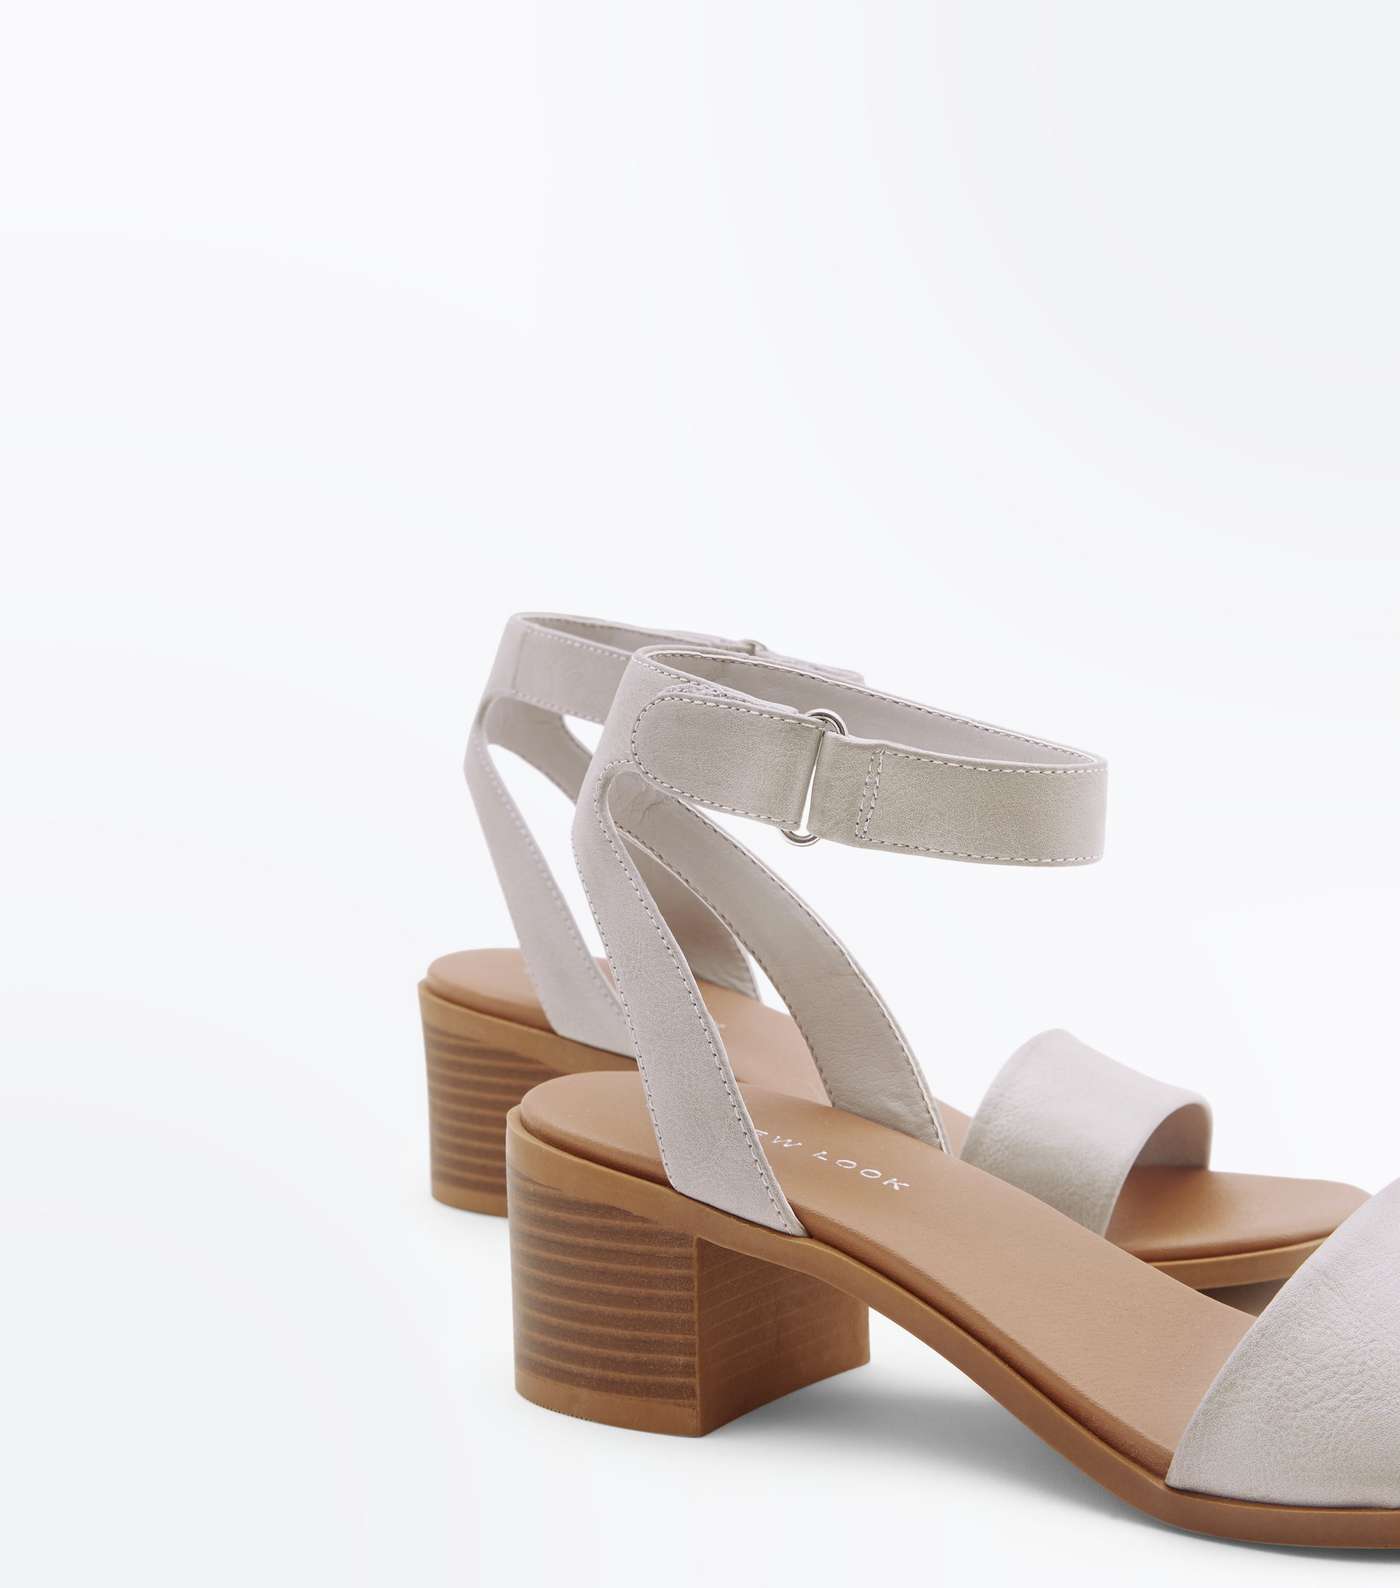 Grey Low Block Heel Flexible Sole Sandals Image 3